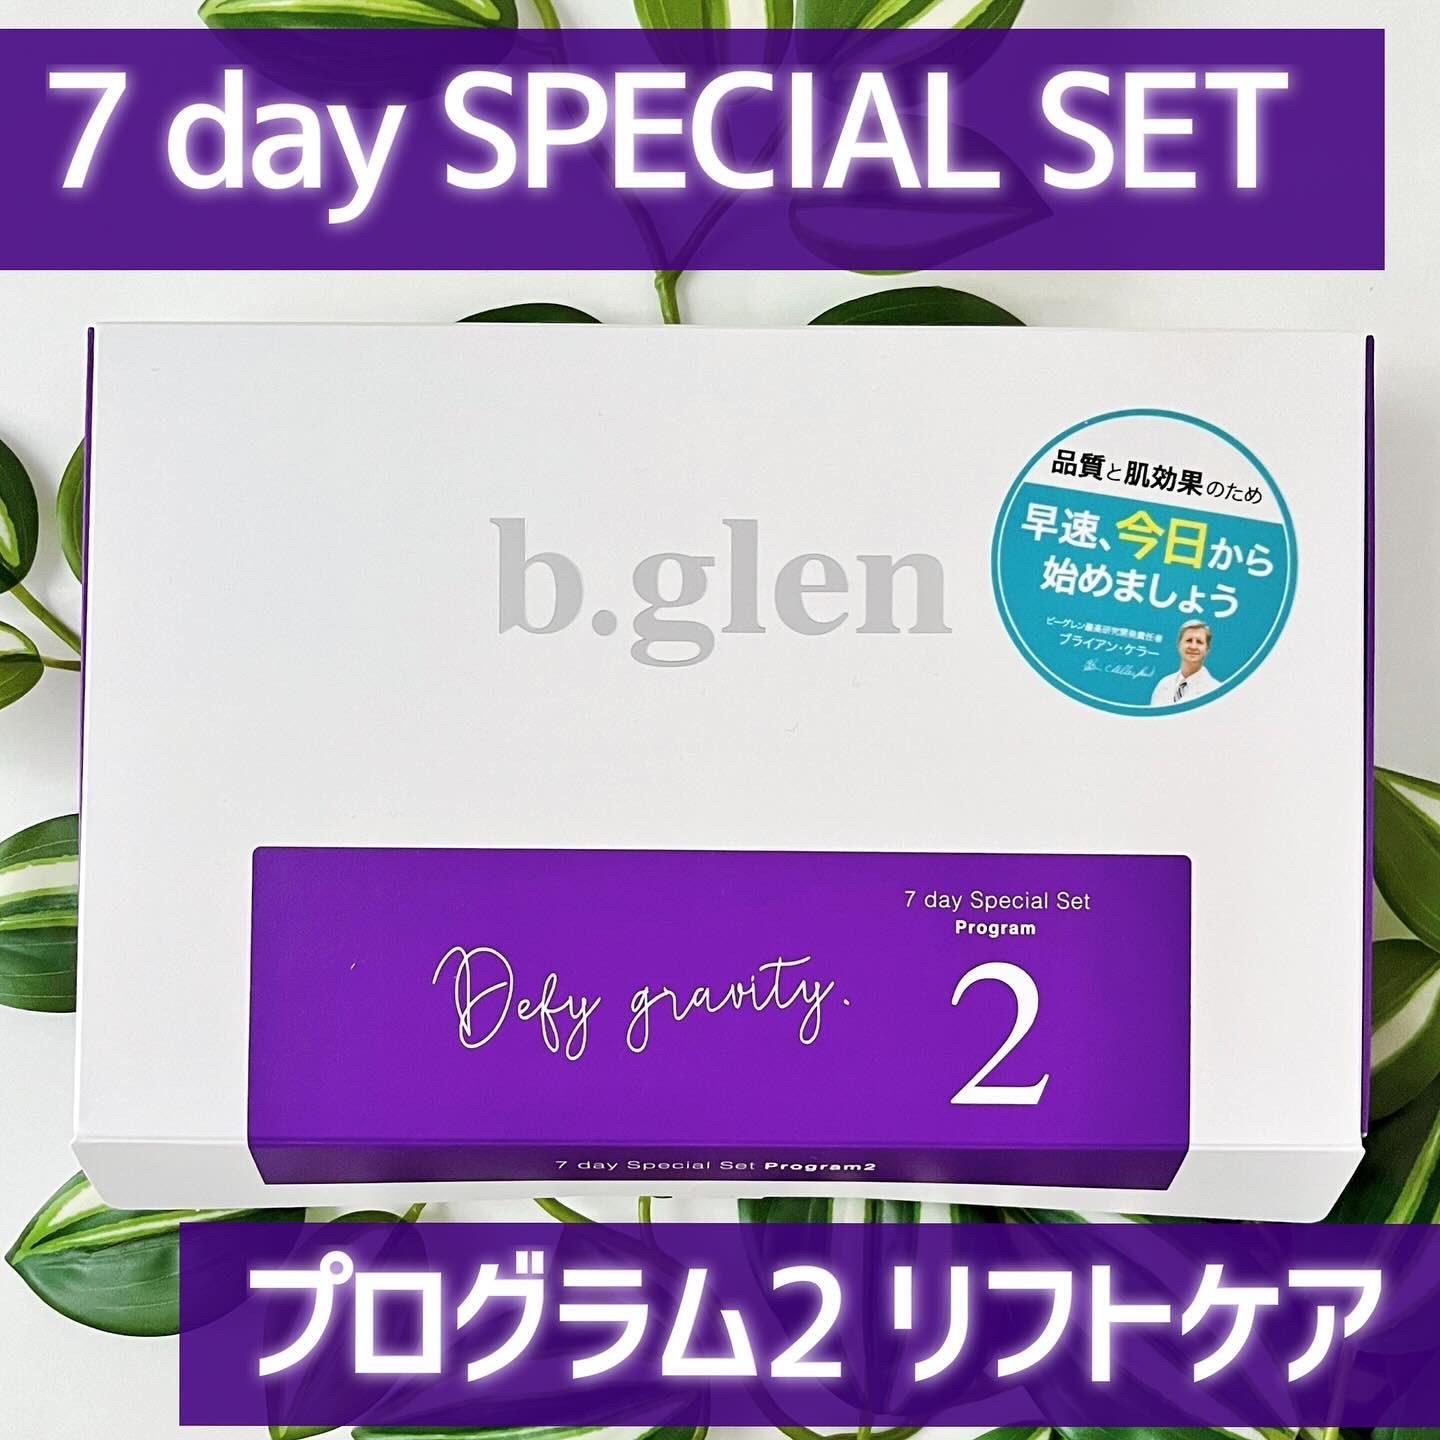 ビーグレントライアル7day Special セット プログラム2 - 基礎化粧品